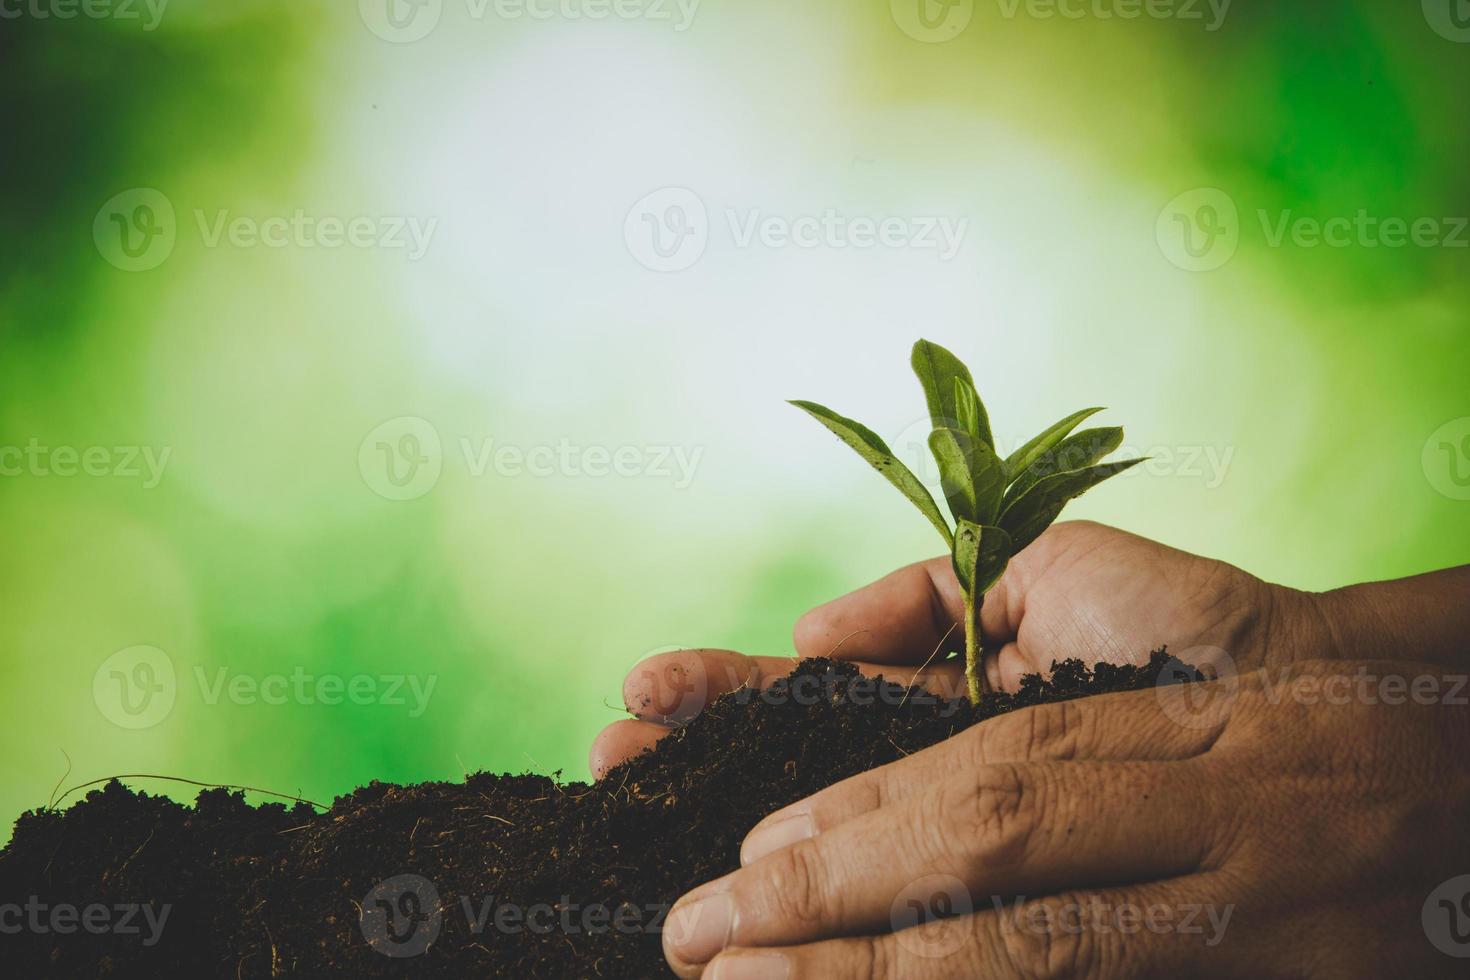 las manos sucias cuidan plantar árboles en la tierra el día mundial del medio ambiente. joven pequeño verde nuevo crecimiento de la vida en el suelo en la naturaleza ecológica. la persona humana cultiva plántulas y protege en el jardín. concepto de agricultura foto